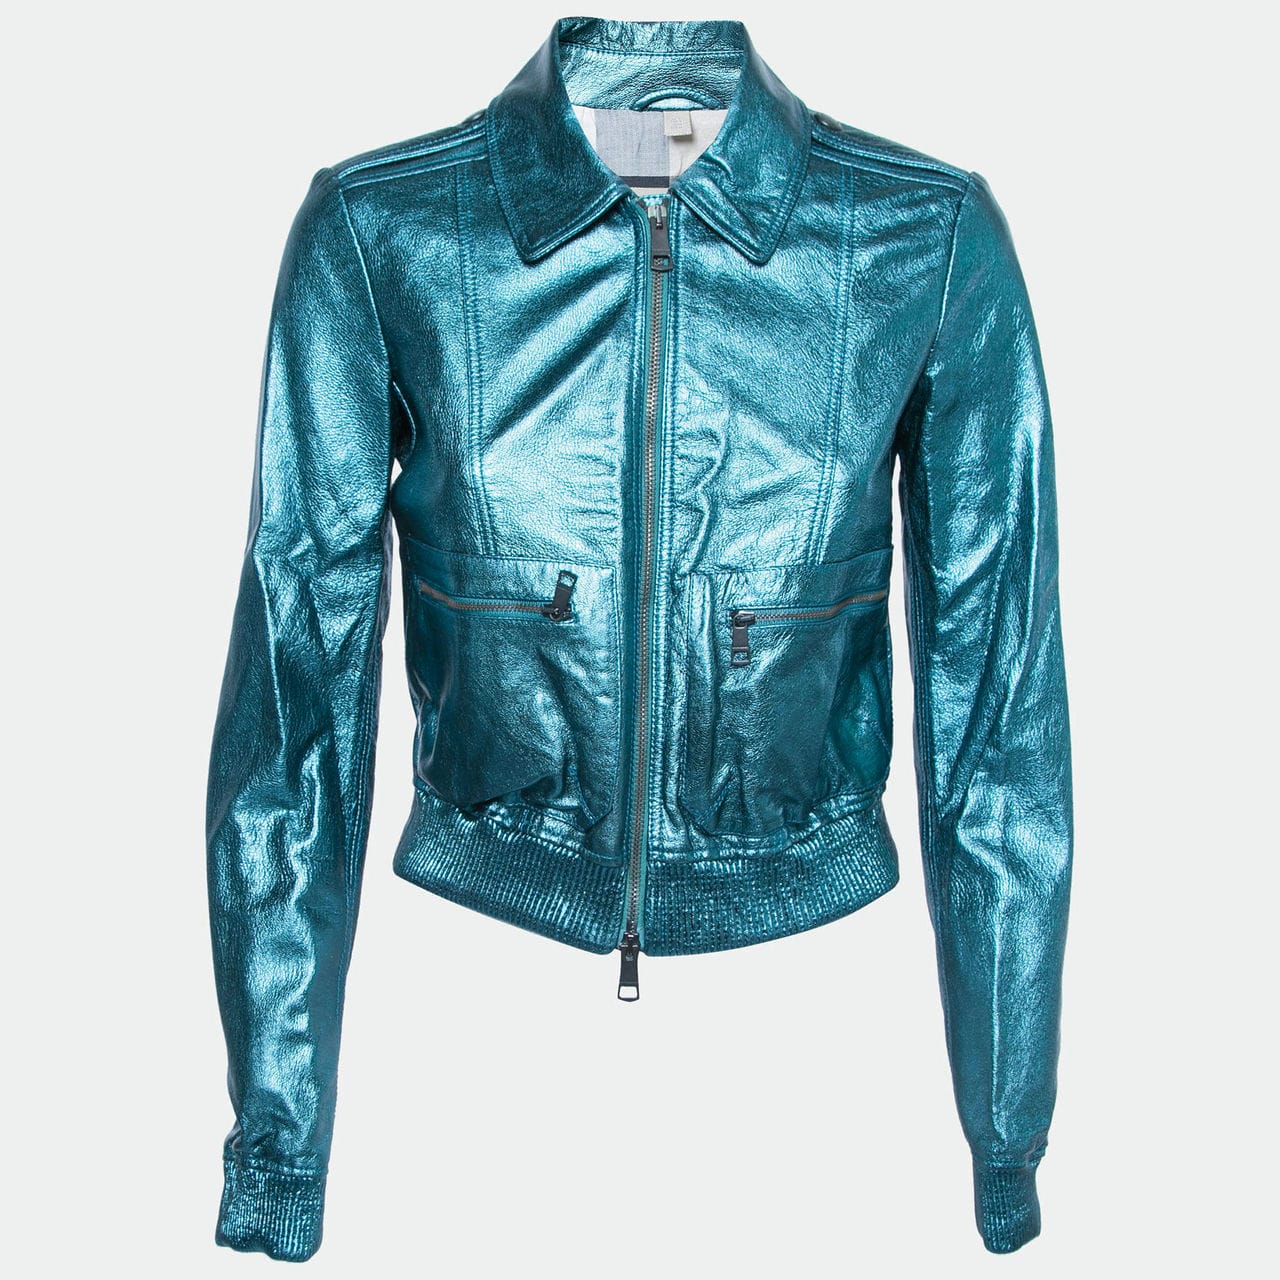 designer leather jacket